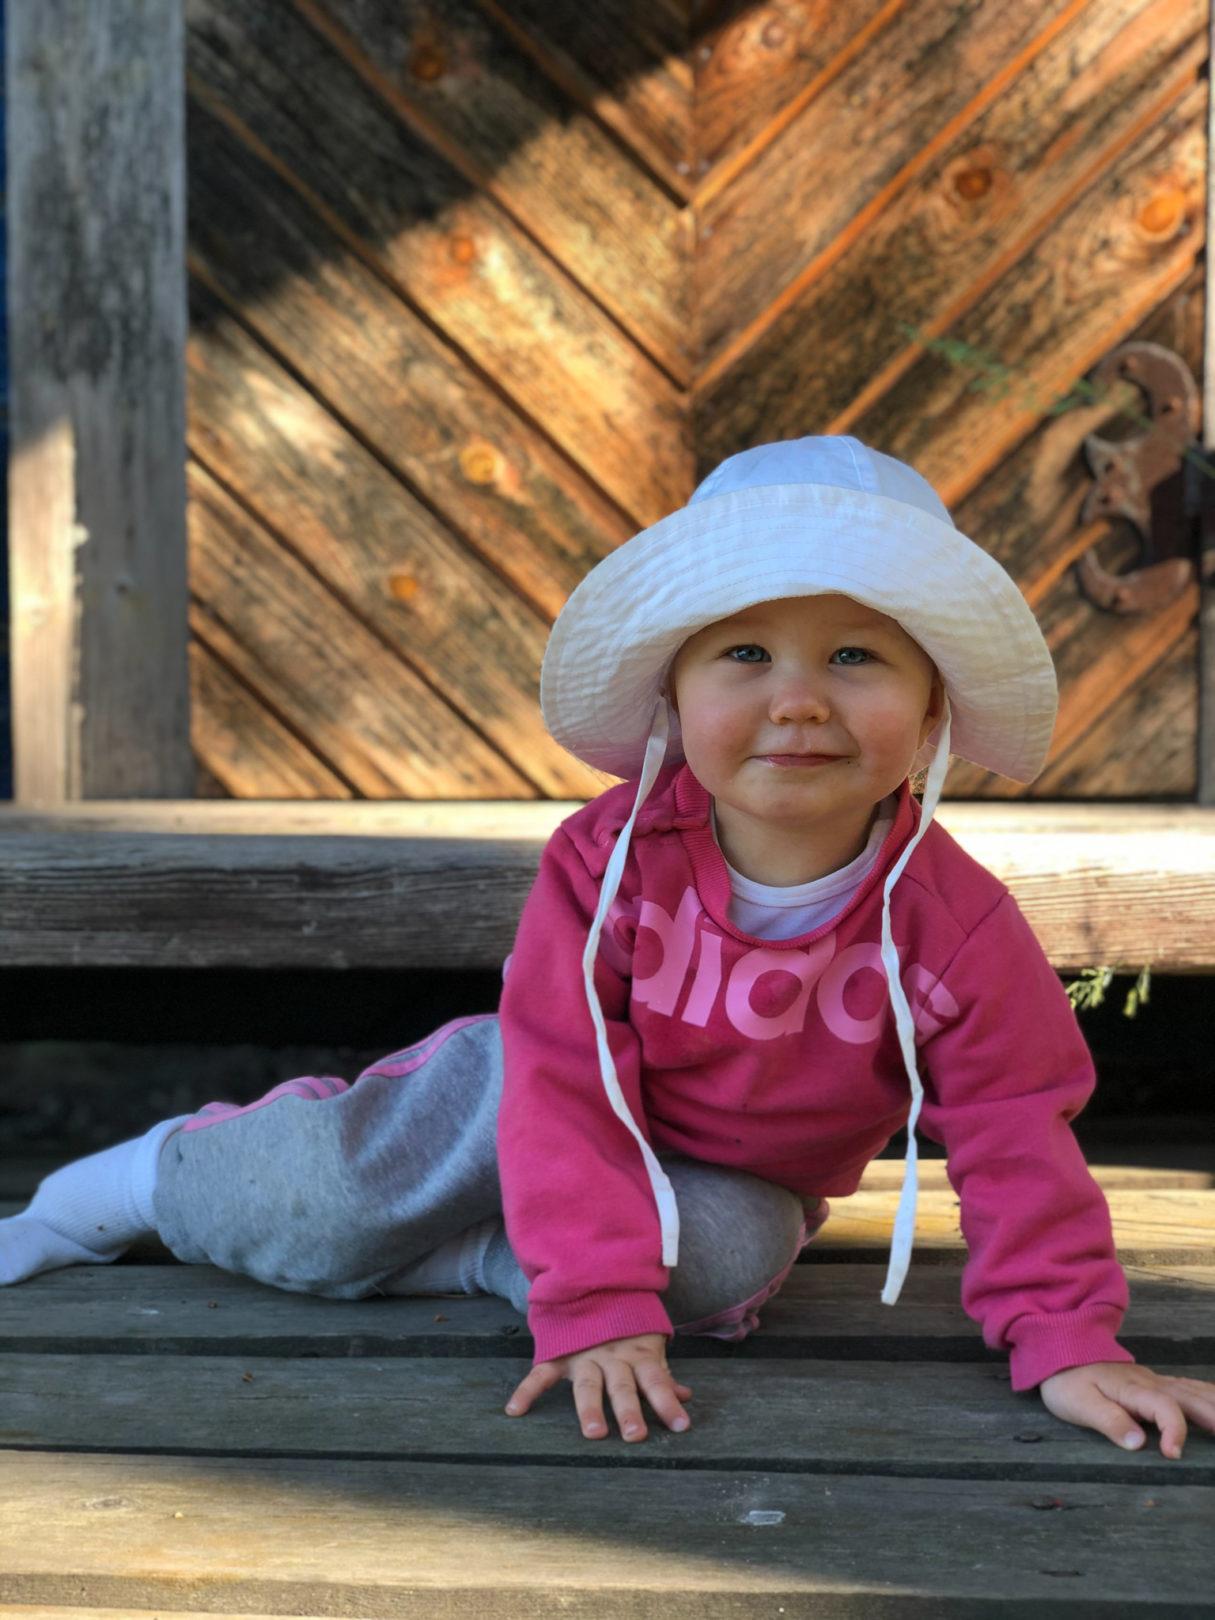 Vauva 11kk: Ensimmäisiä askeleita ja pitkiä haleja - Valeäiti